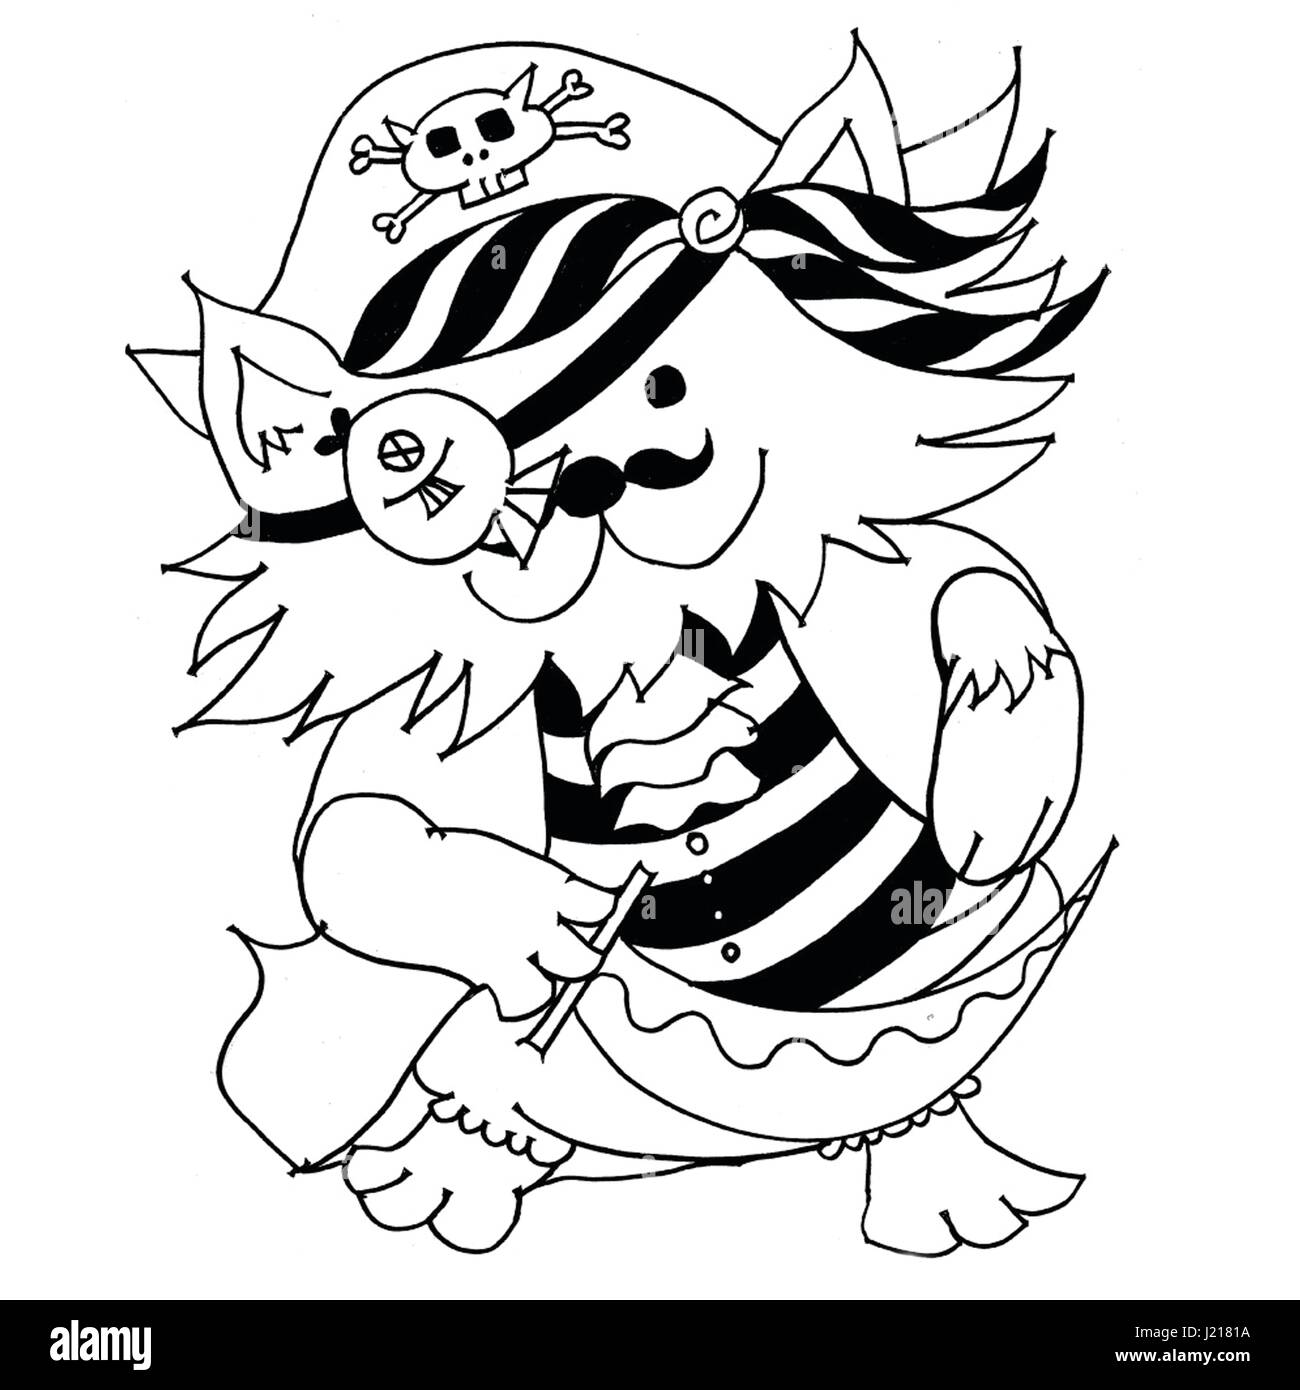 Gatto pirata disegno in bianco e nero Foto Stock